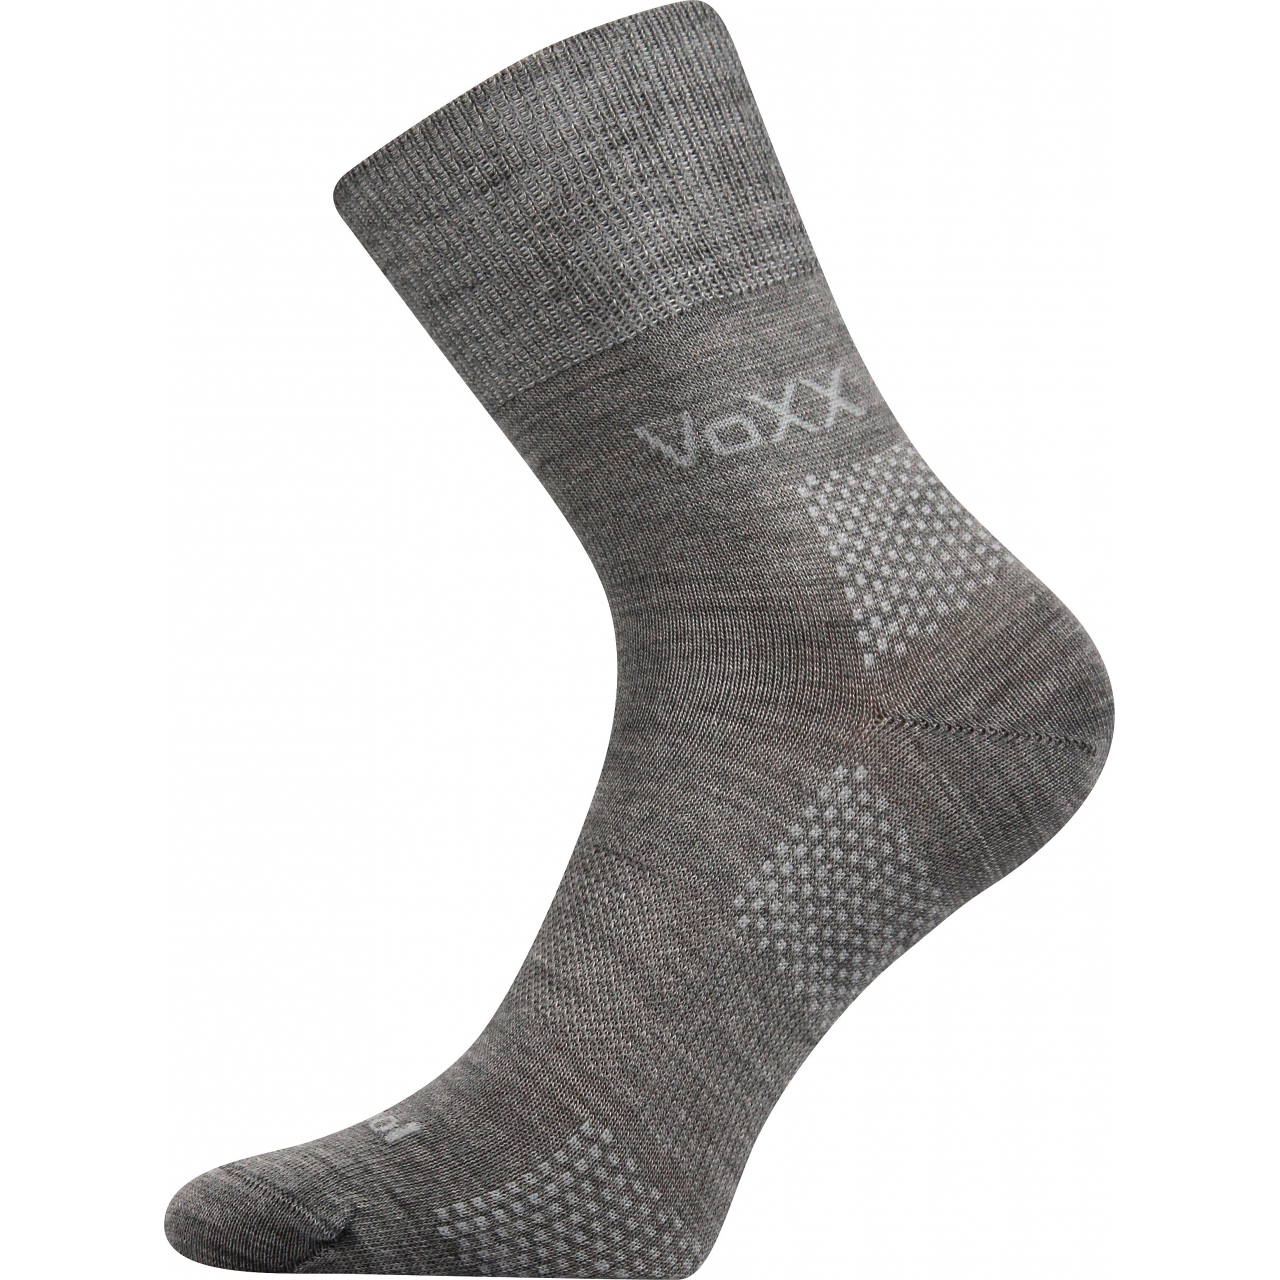 Ponožky funkční unisex Voxx Orionis ThermoCool - světle šedé, 35-38